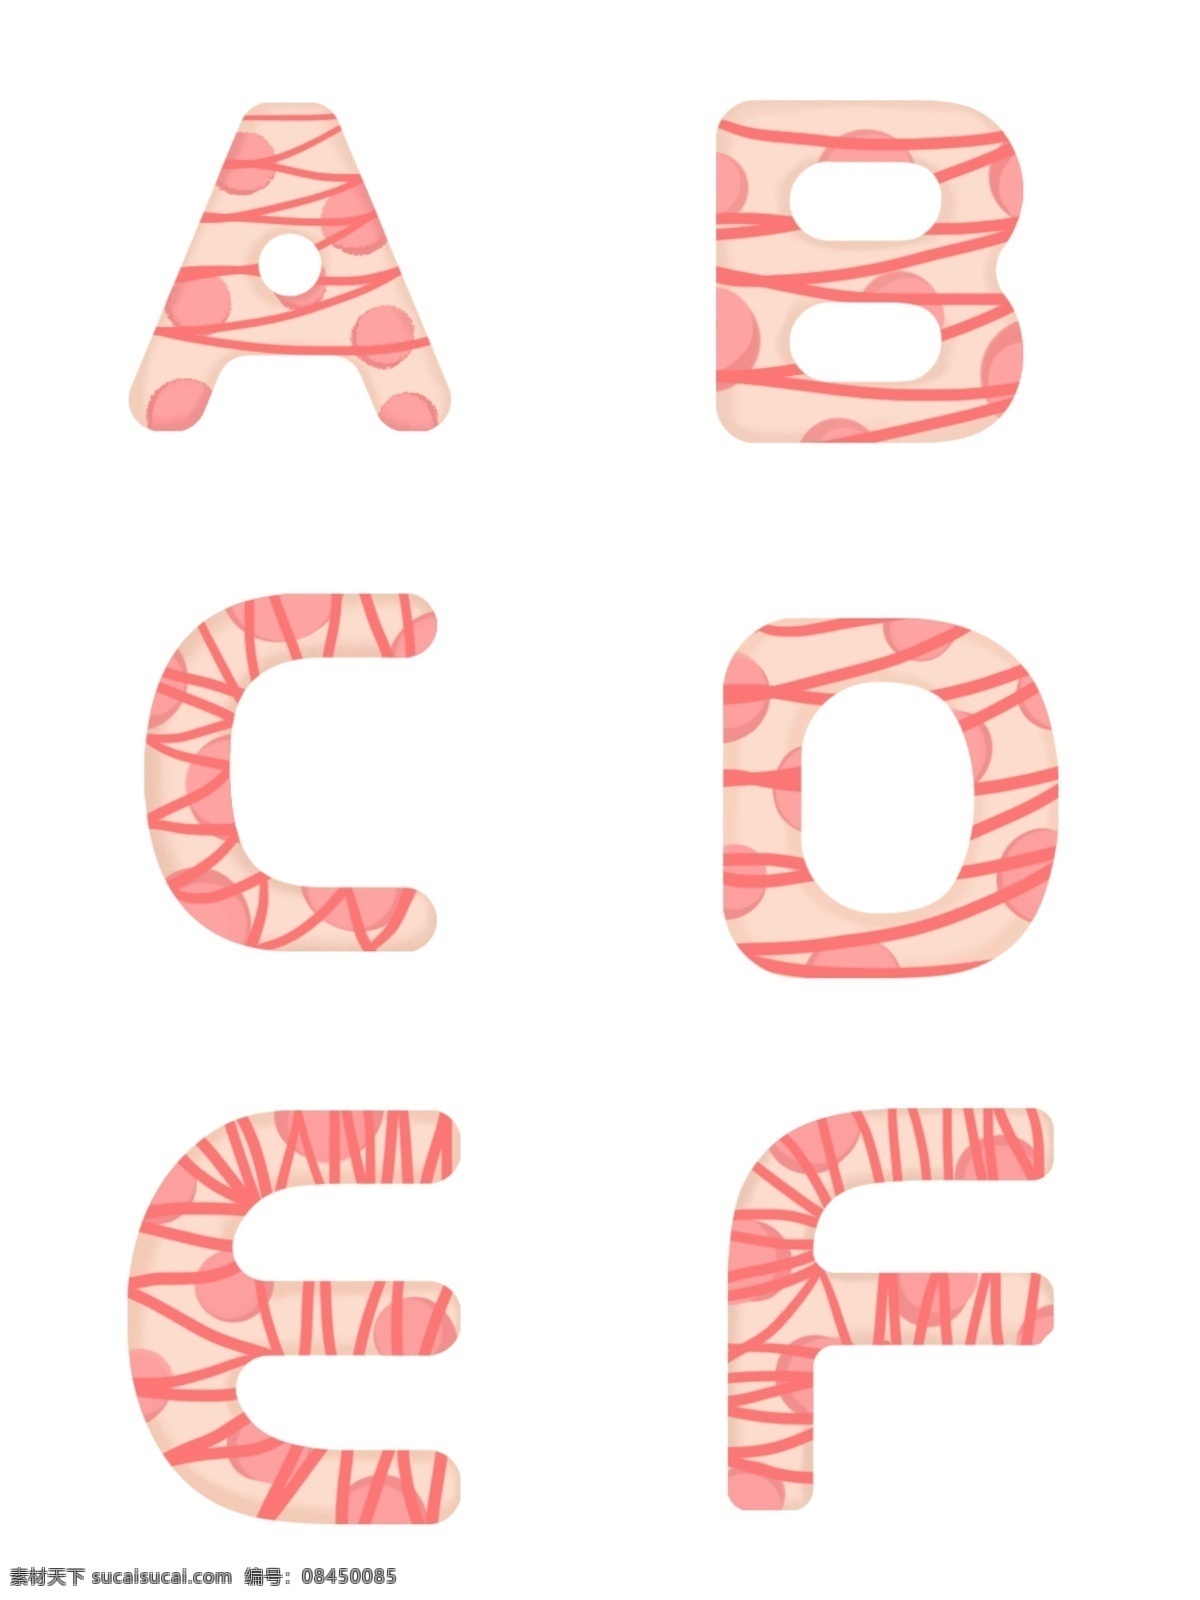 手绘 立体 糖衣 英文 字母 元素 糖果字母 可爱字母 饼干字母 个性字母 创意字母 糖衣字母 节日英文字母